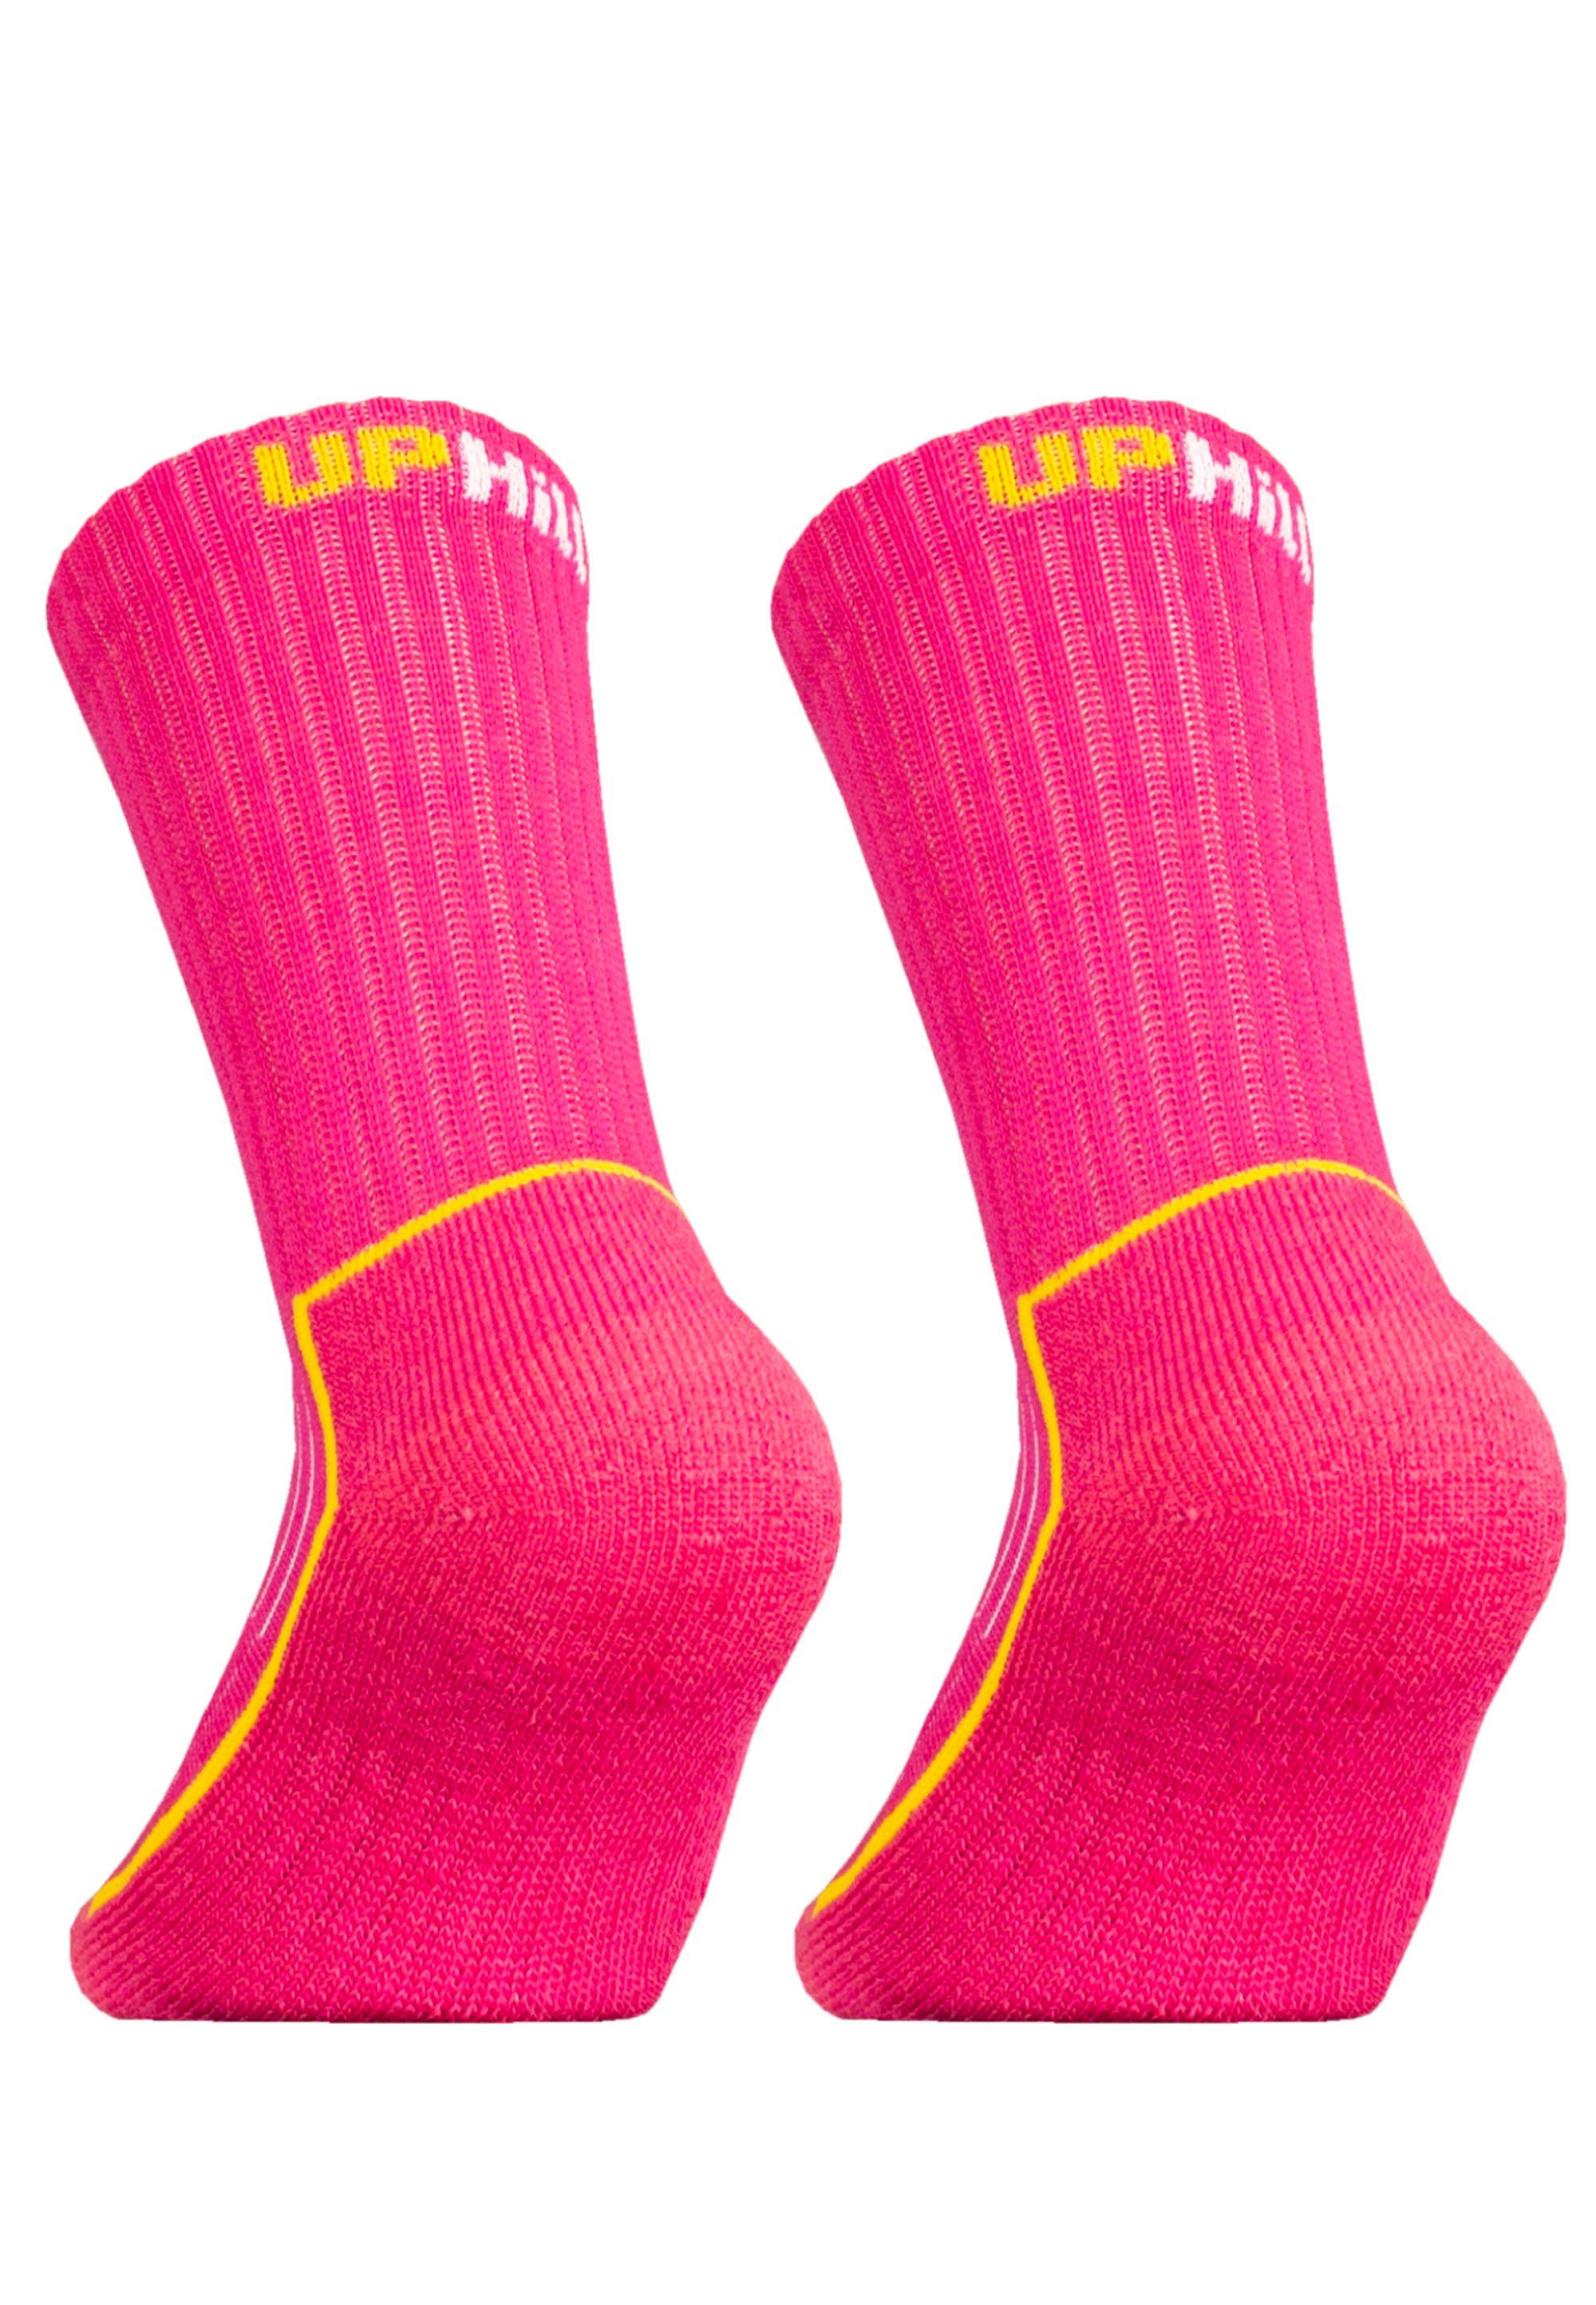 JR Pack Flextech-Struktur rosa mit SAANA (2-Paar) Socken 2er UphillSport